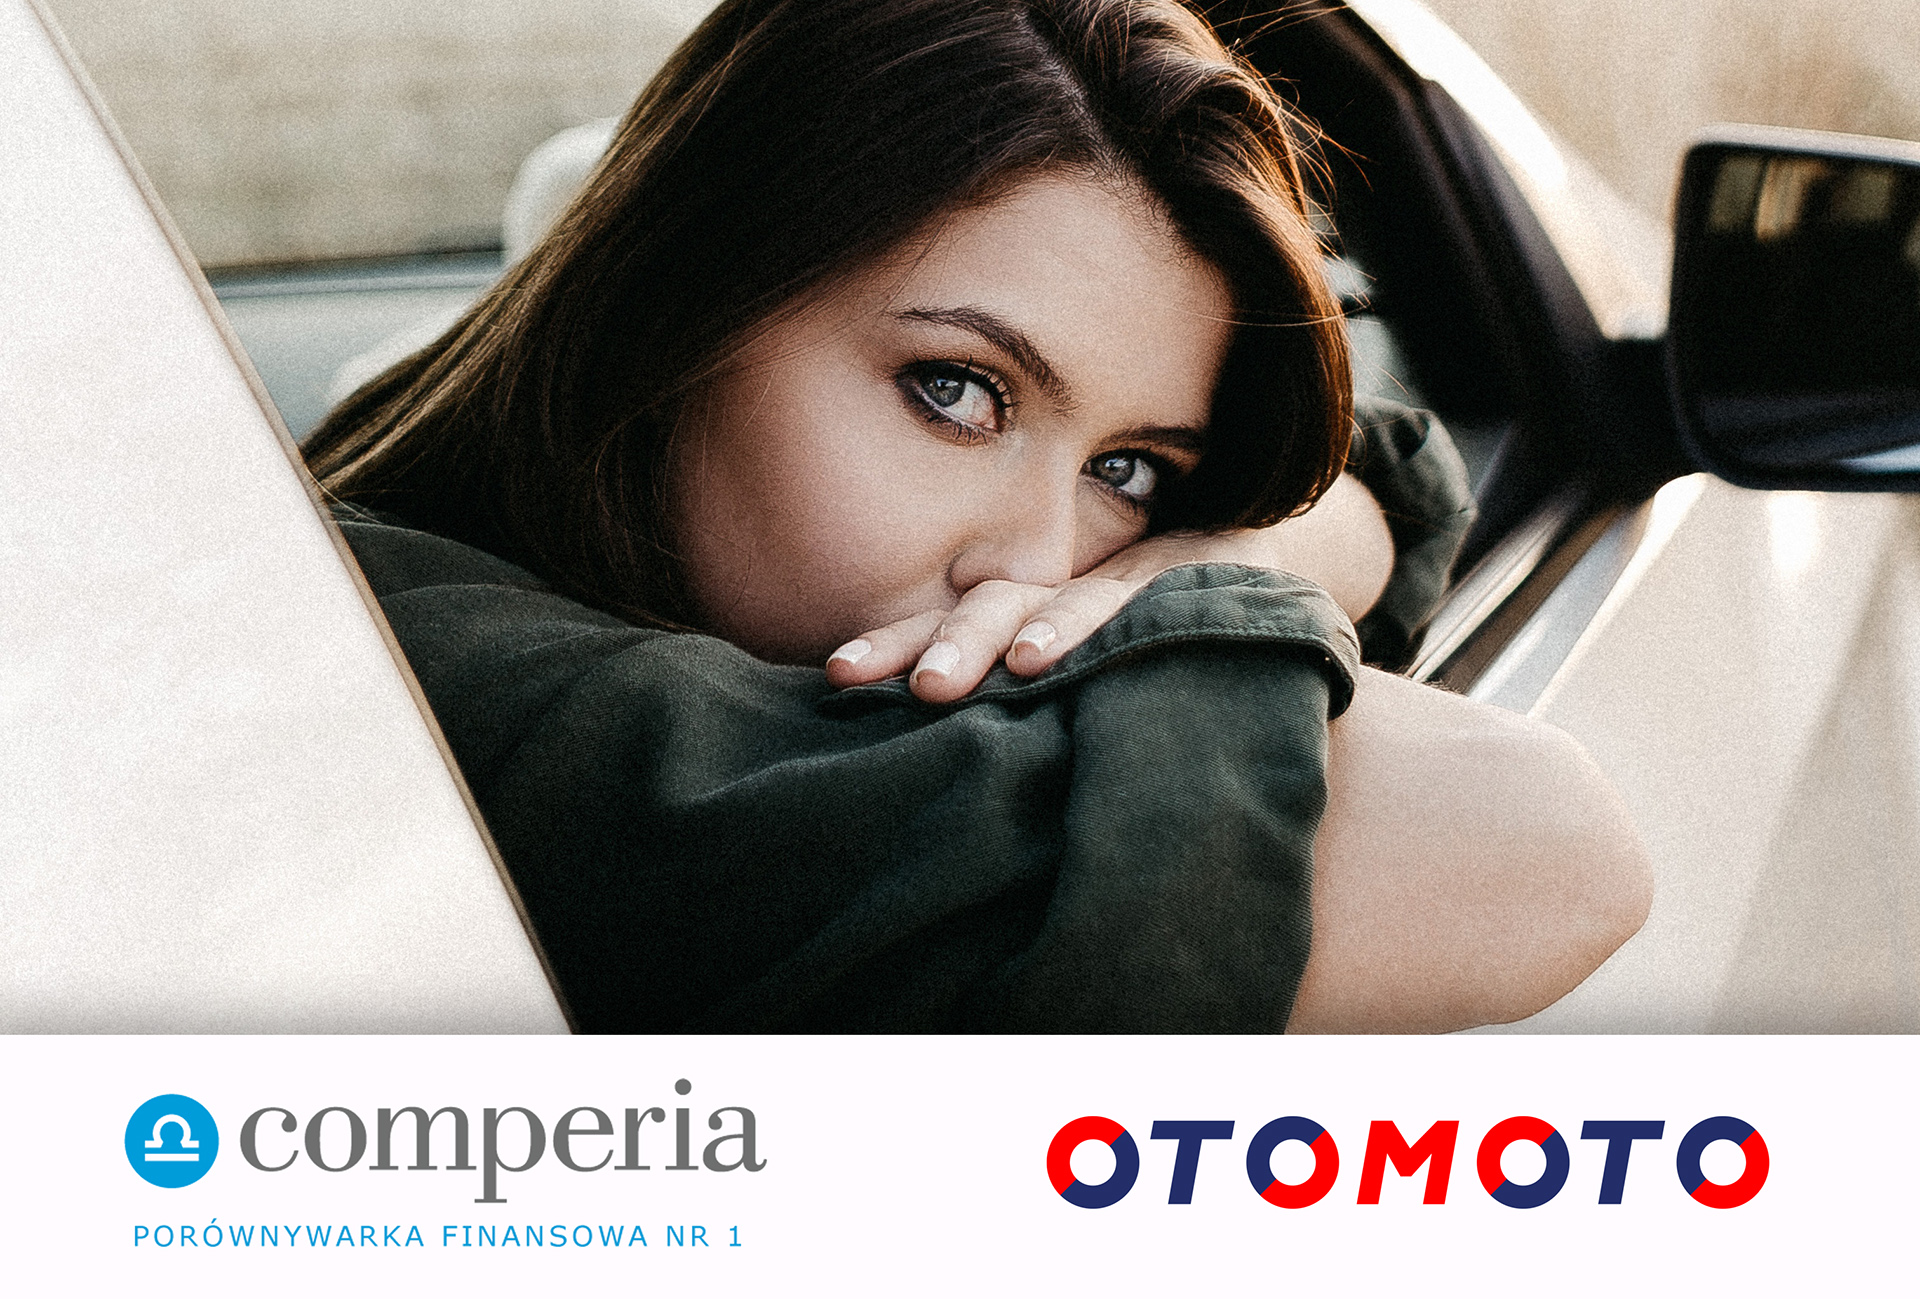 Comperia.pl wyłącznym partnerem finansowym OTOMOTO